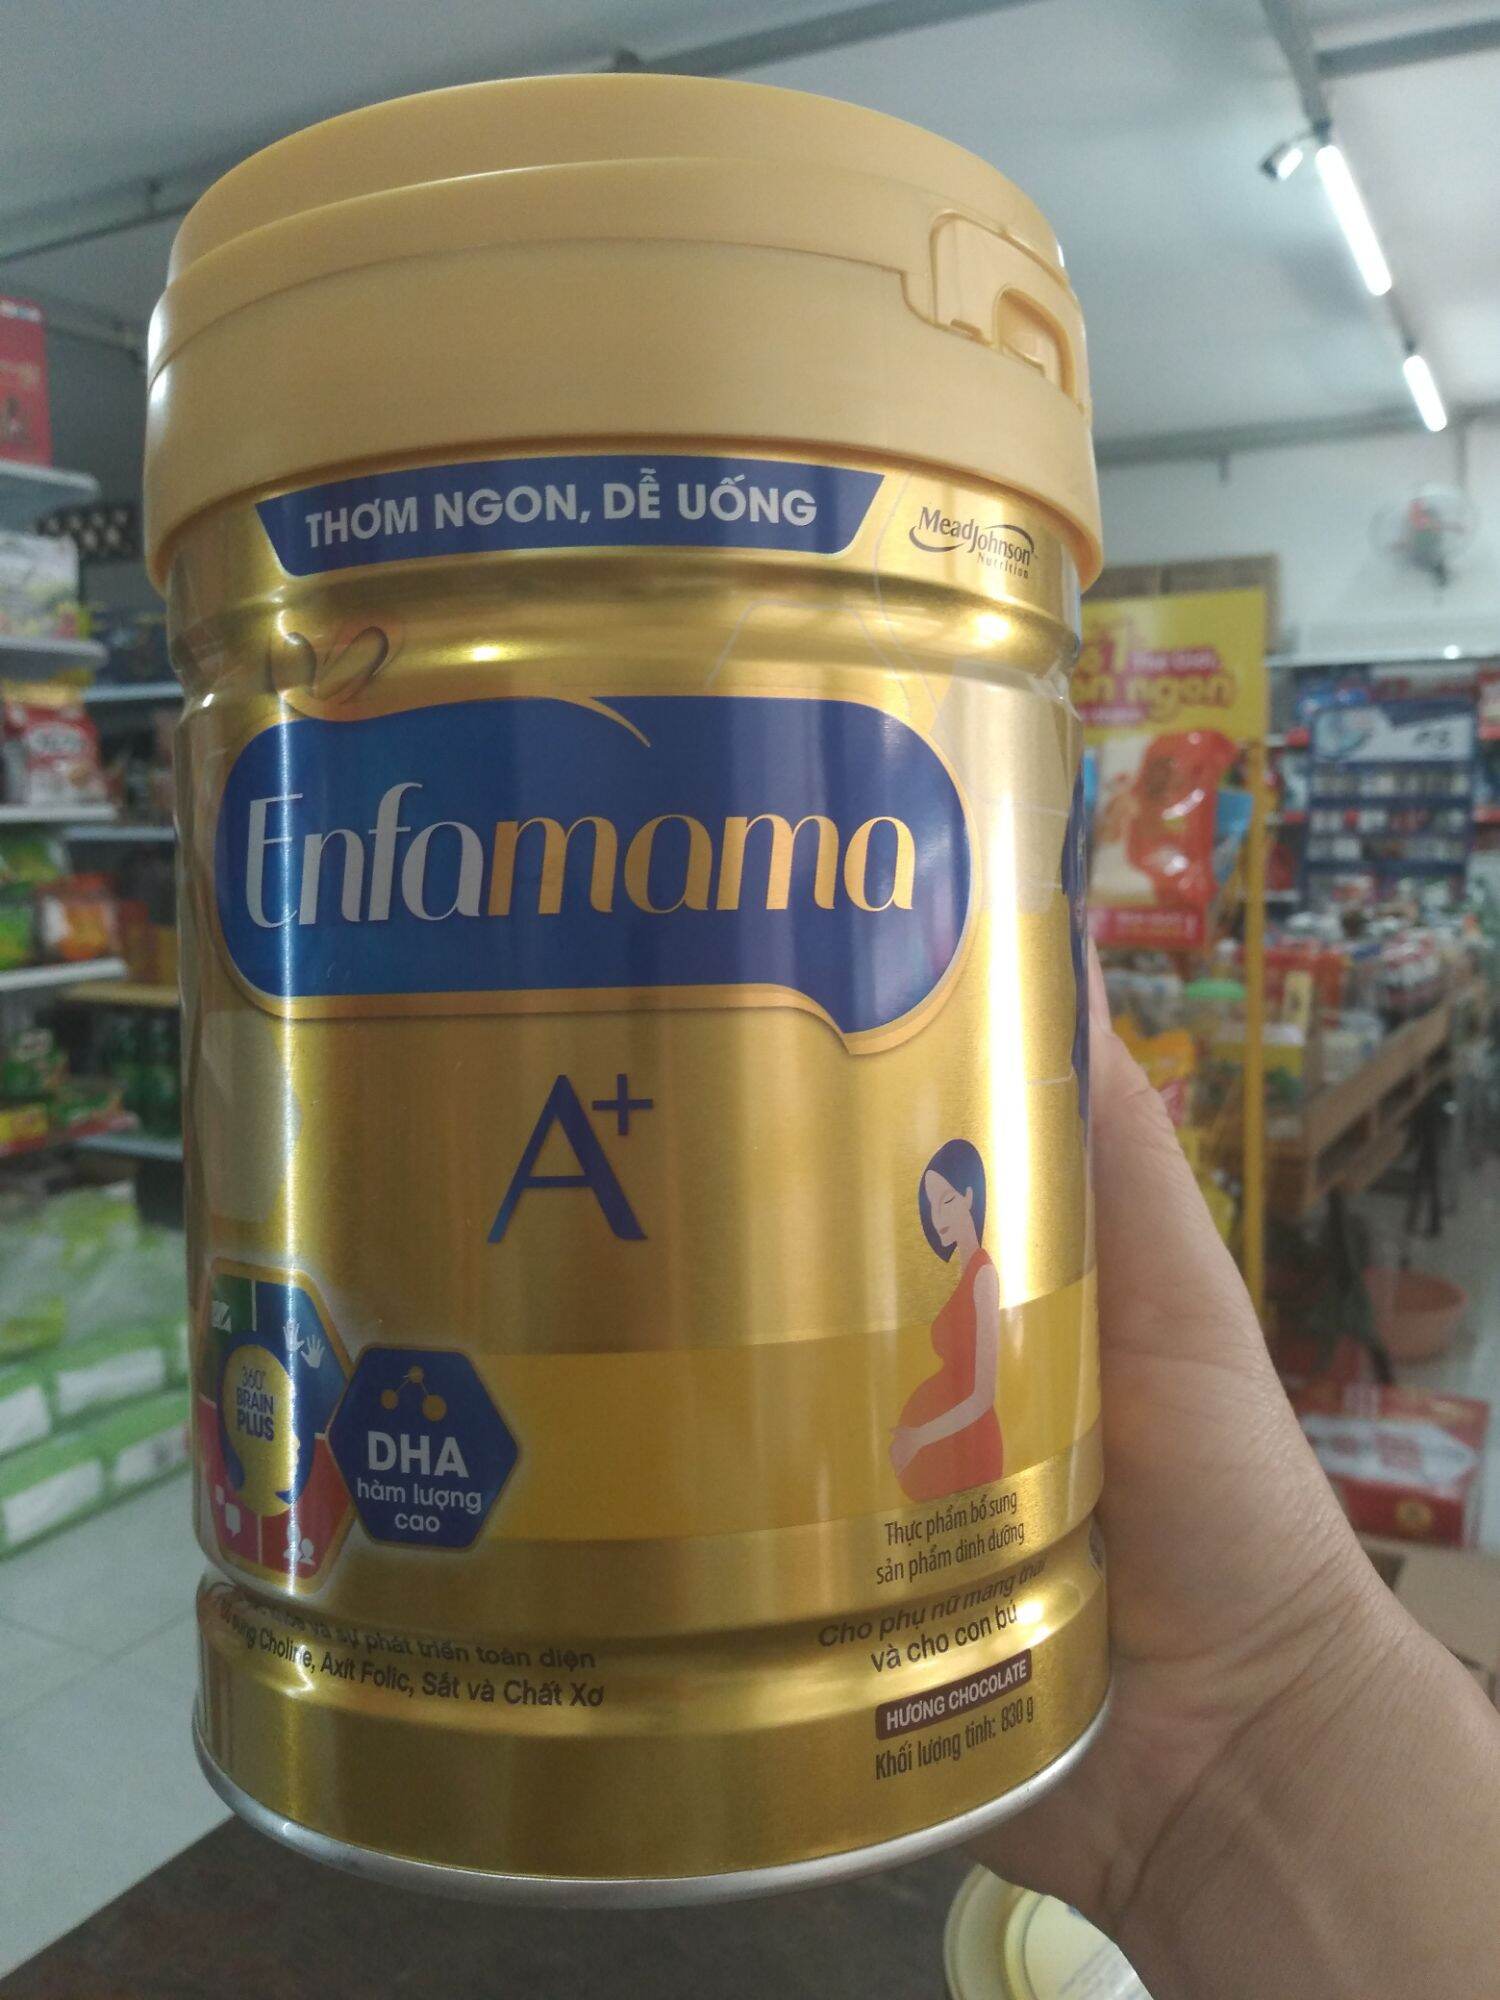 Sữa bột Enfamama A+ 830g dành cho mẹ mang thai và cho con bú